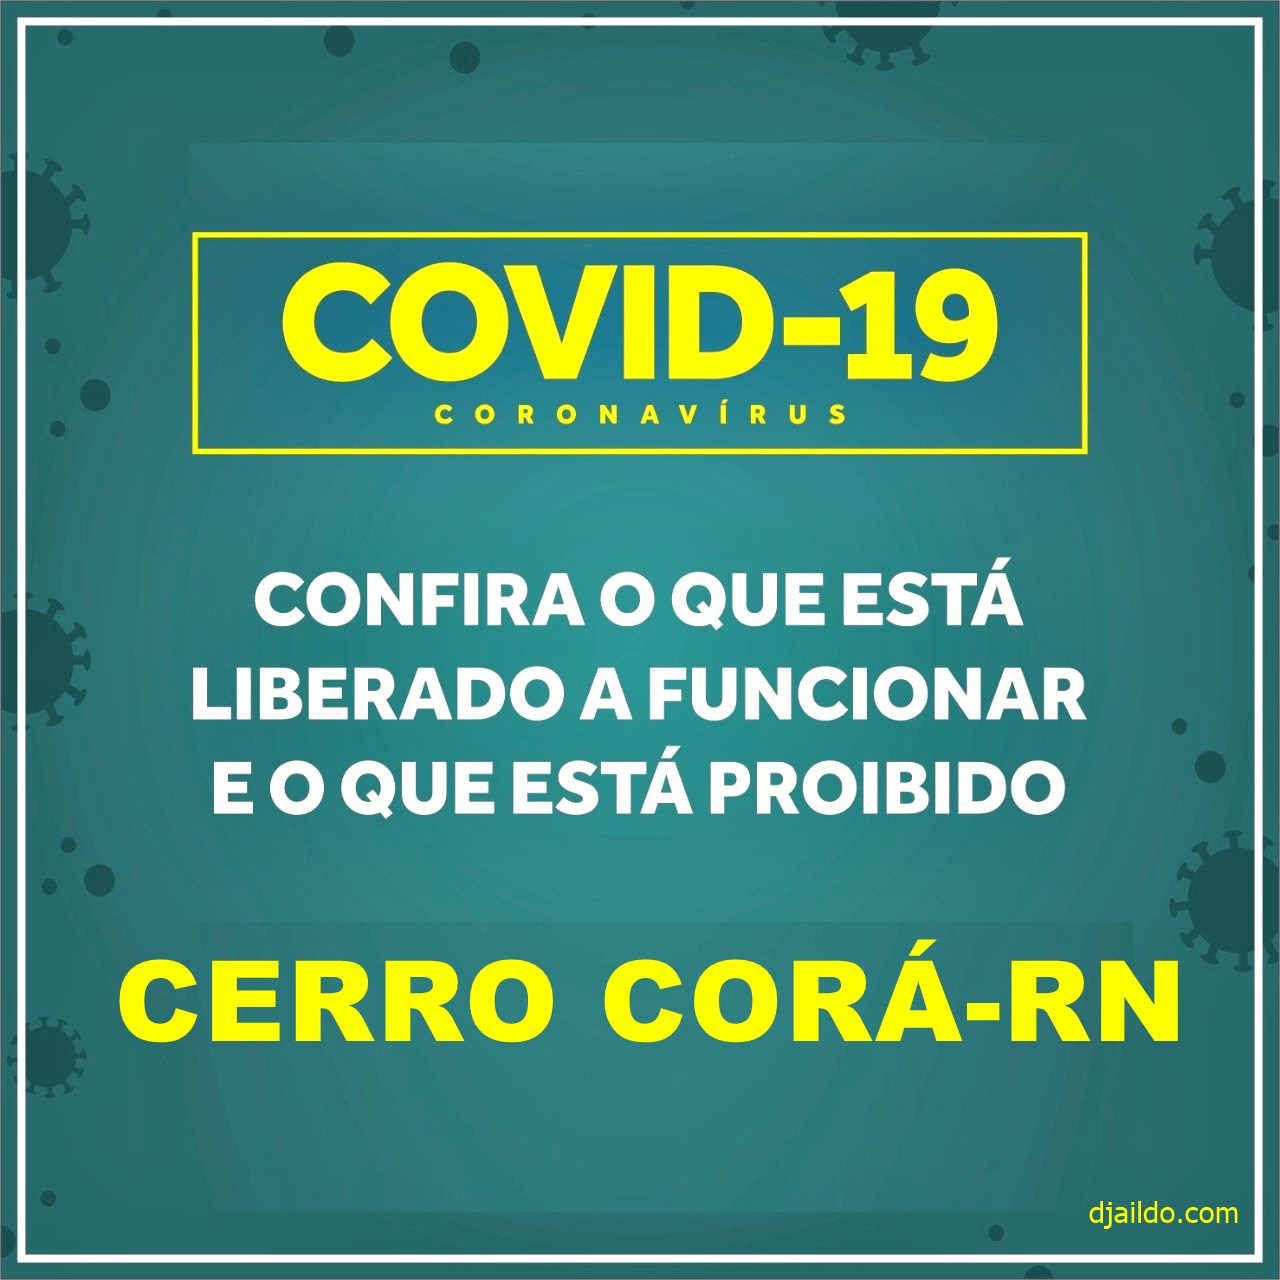 Novo Decreto de 05 a 14 de junho em Cerro Corá volta a liberar comércios que poderão funcionar exclusivamente na modalidade delivery (Confira Aqui)